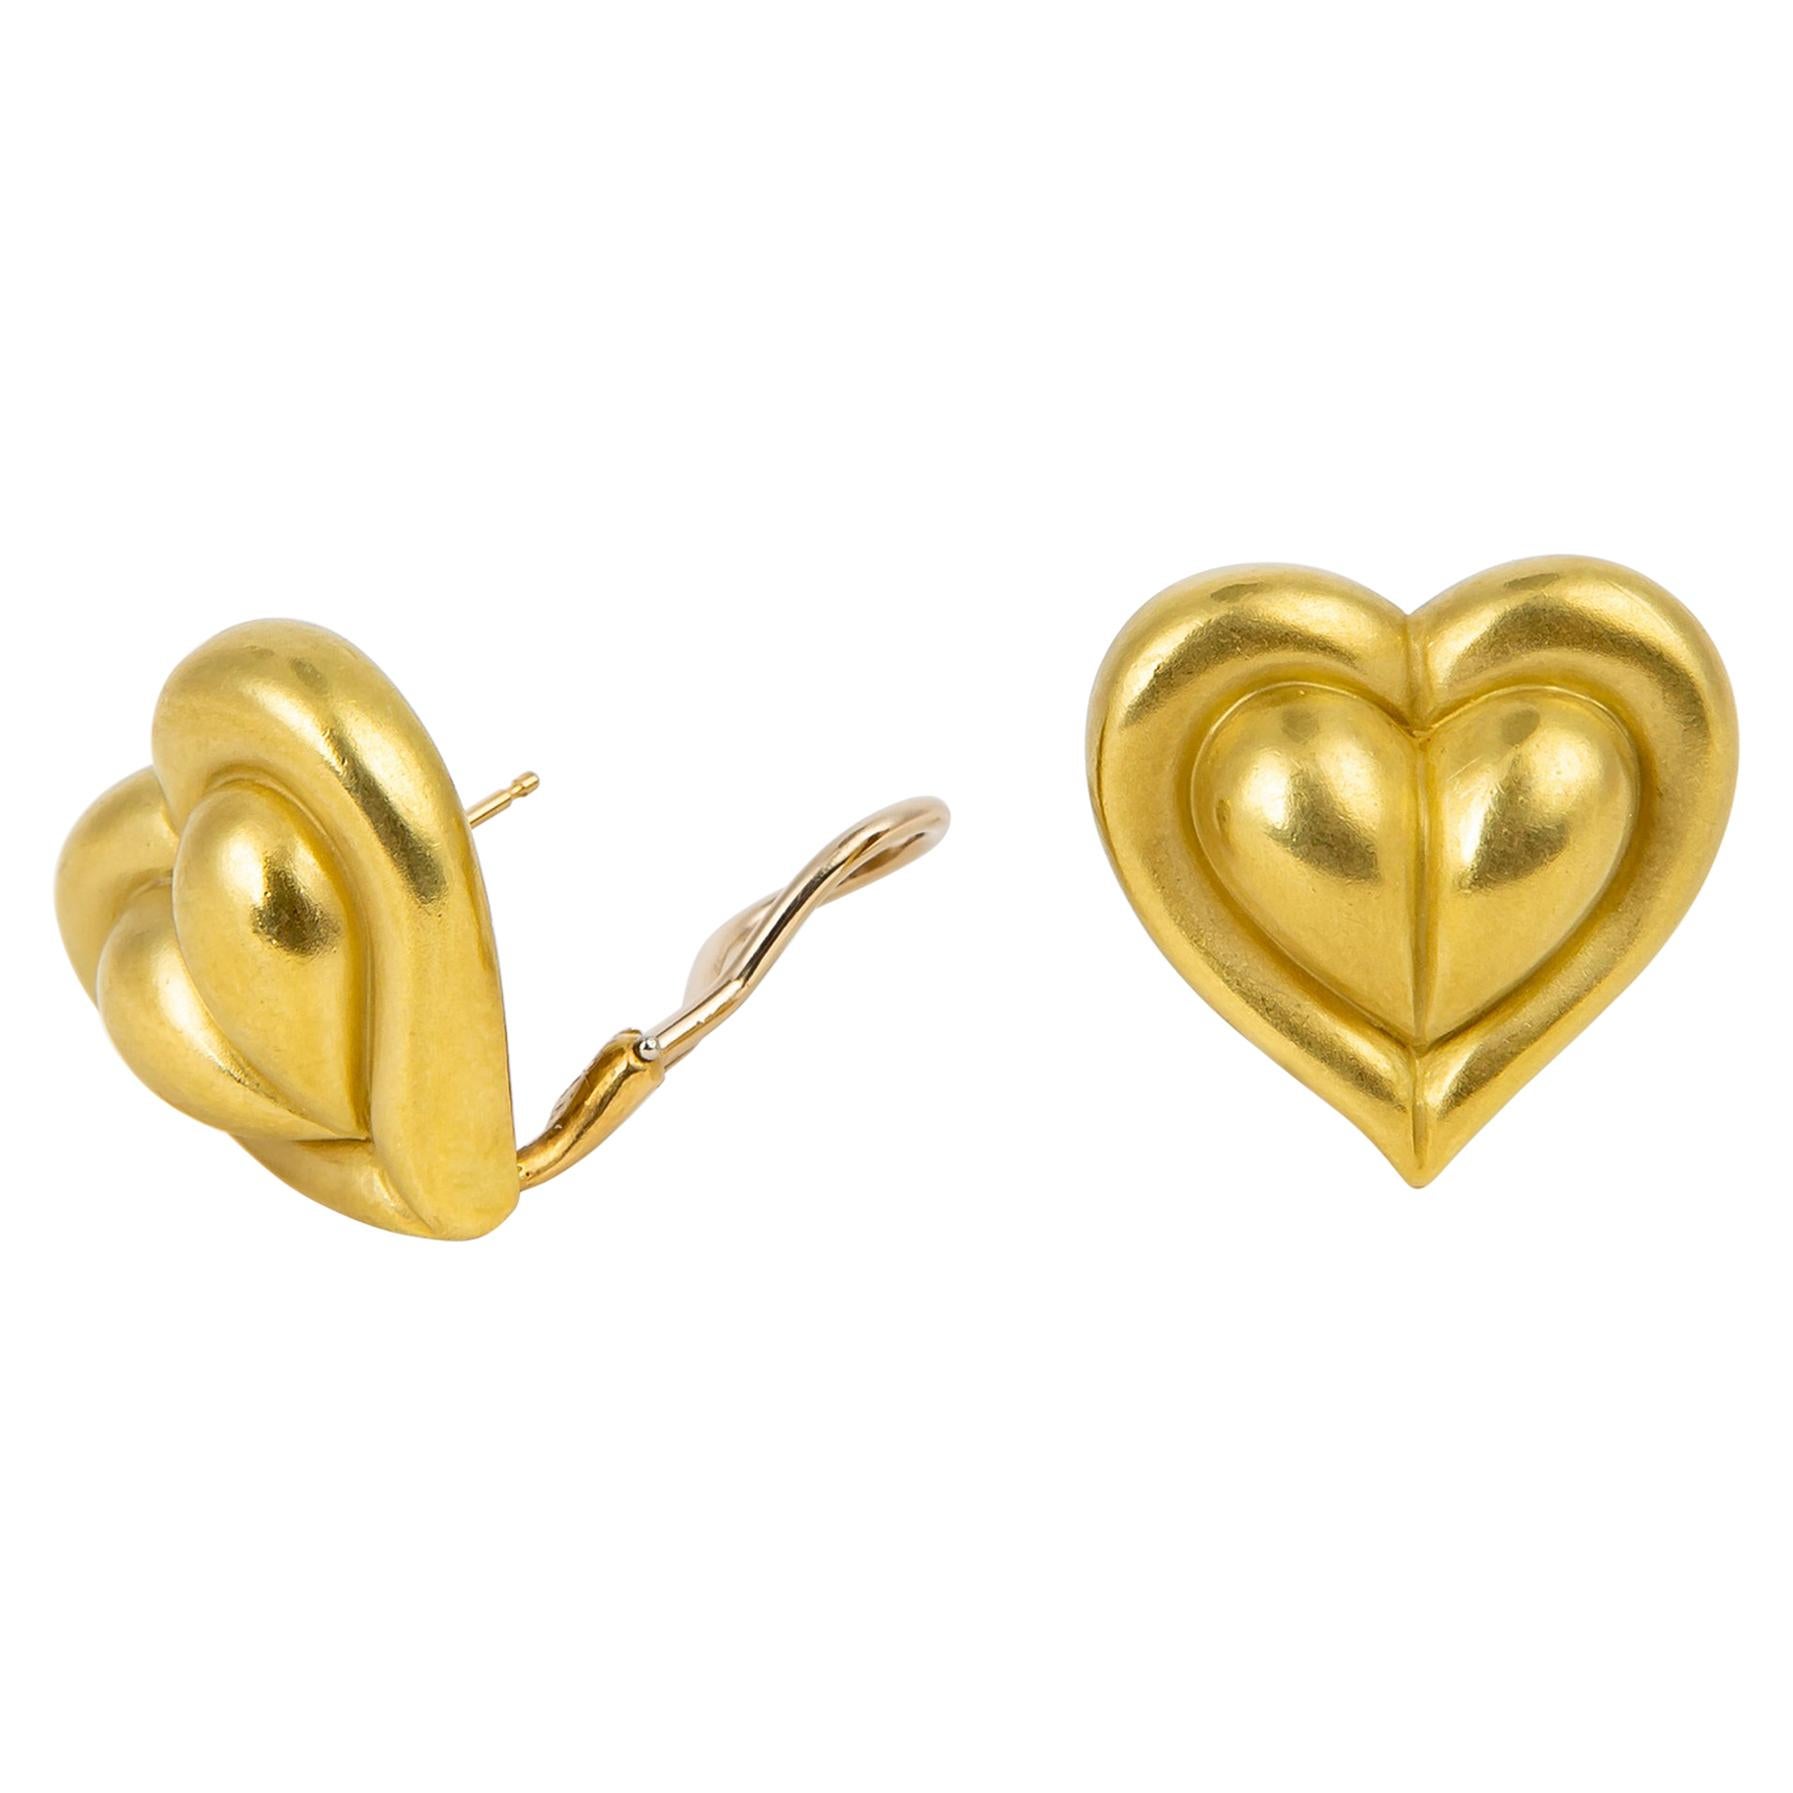 Kieselstein-Cord Heart Motif Earrings